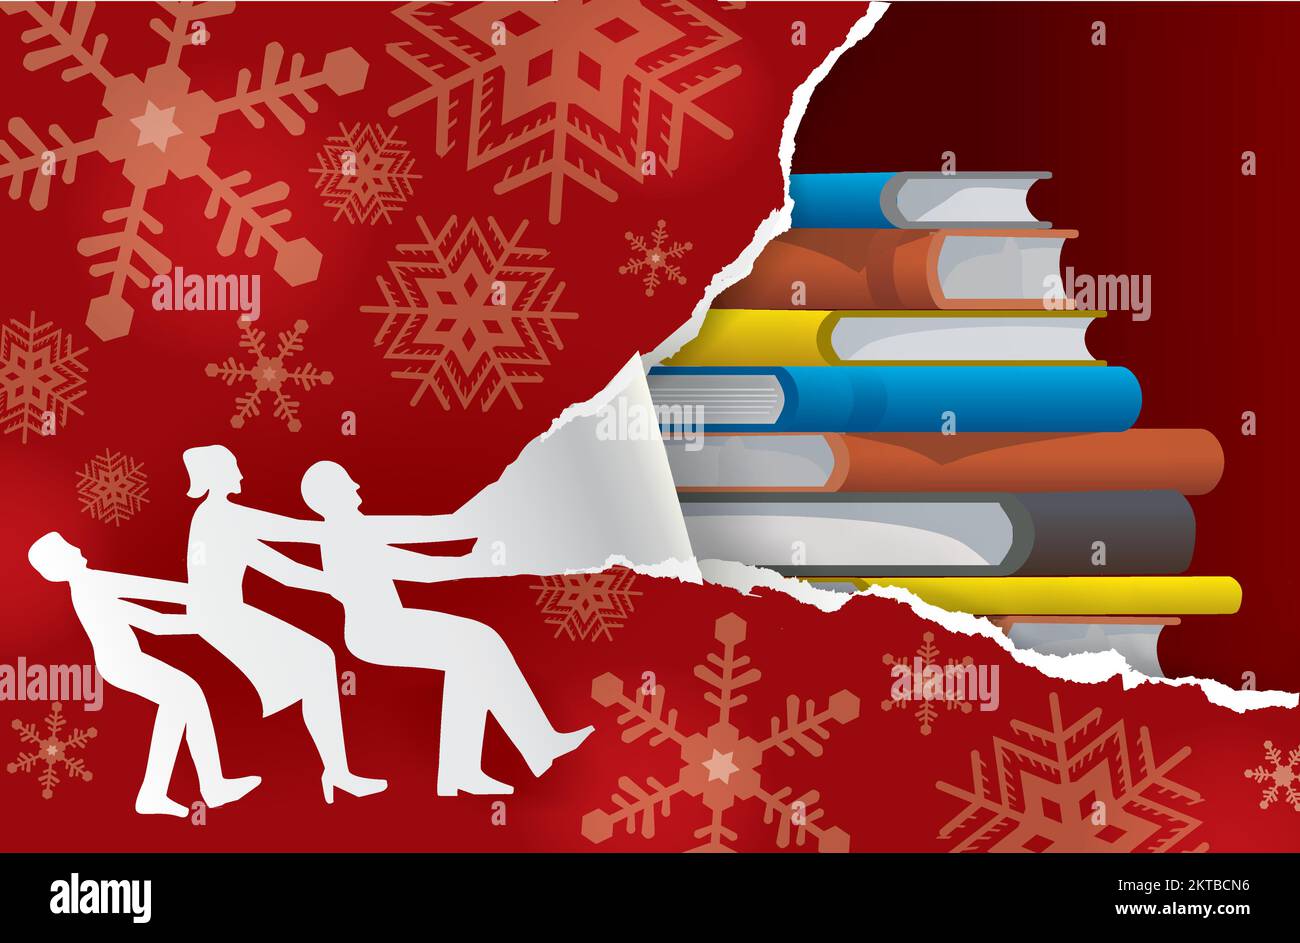 Familie reißt Weihnachten Geschenkpapier, entdeckt Bücher. Silhouette aus Papier und rotes, zerrissenes weihnachtspapier, Buch als weihnachtsgeschenk. Stock Vektor